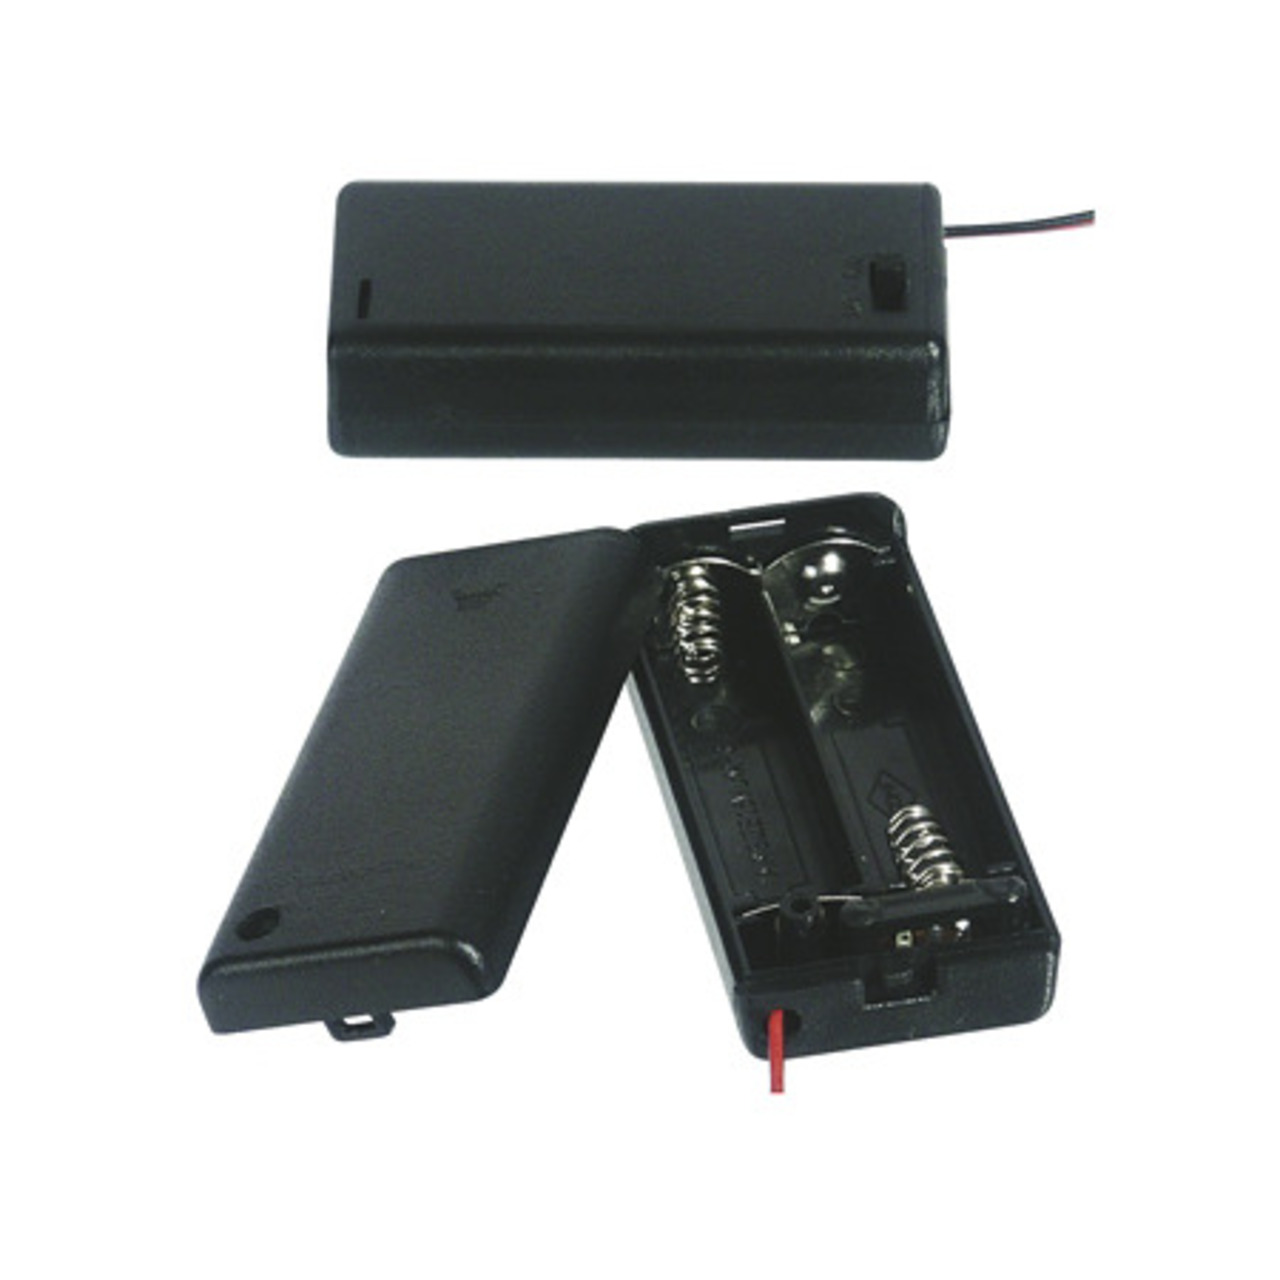 Batteriehalter für 2 x Mignon Batterie mit Anschlusskabel